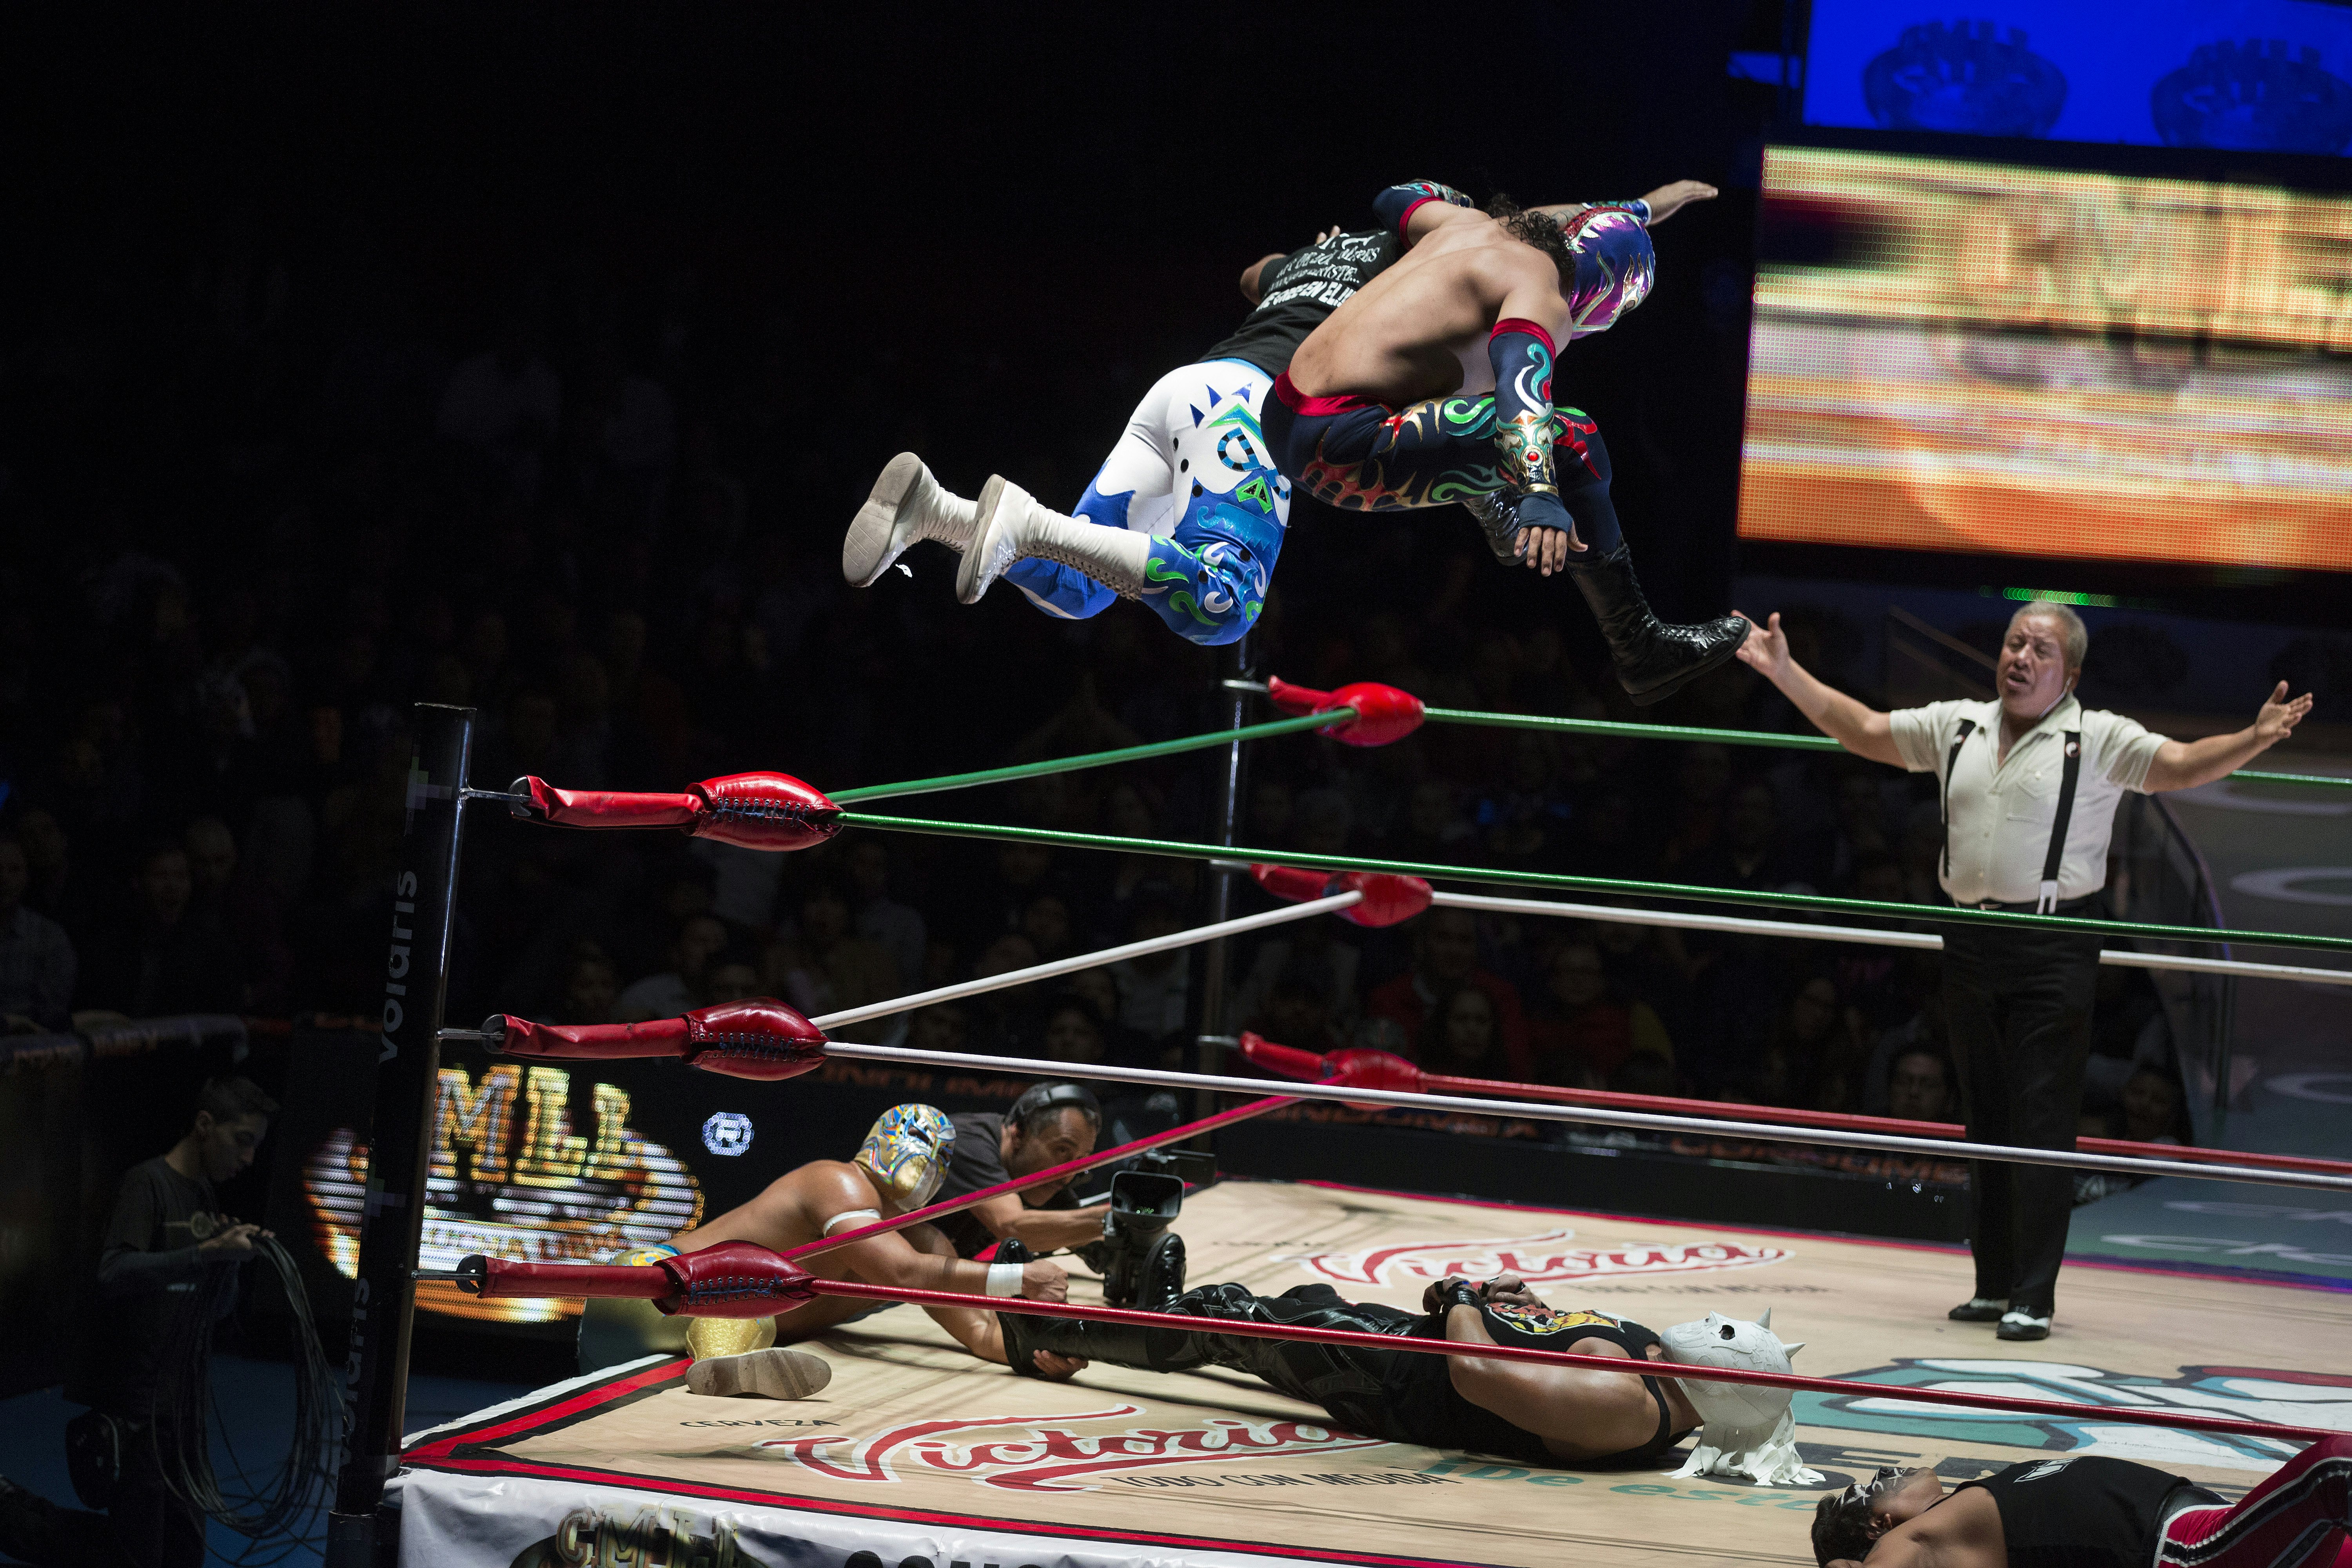 Dos luchadores salen volando del cinturón superior del ring de lucha mientras otro luchador se acuesta en la colchoneta.  Hay un árbitro con los brazos extendidos al fondo.